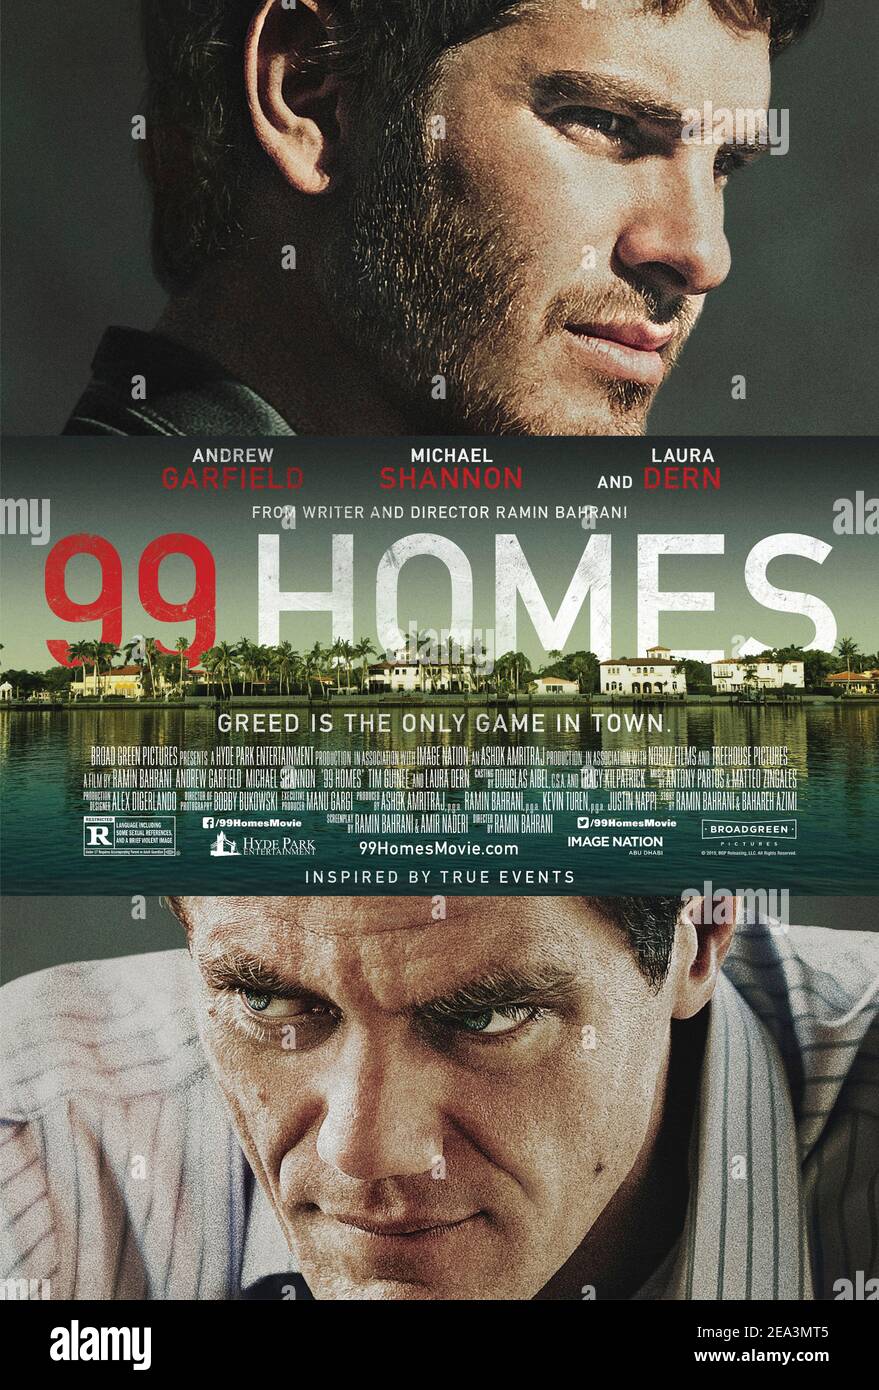 99 Homes (2014) Regie: Ramin Bahrani mit Andrew Garfield, Michael Shannon und Laura dern. Ein vor kurzem arbeitsloser alleinerziehender Vater kämpft, um seine abgeschottete Heimat zurückzubekommen, indem er für den Immobilienmakler arbeitet, der die Quelle seiner Frustration ist. Stockfoto